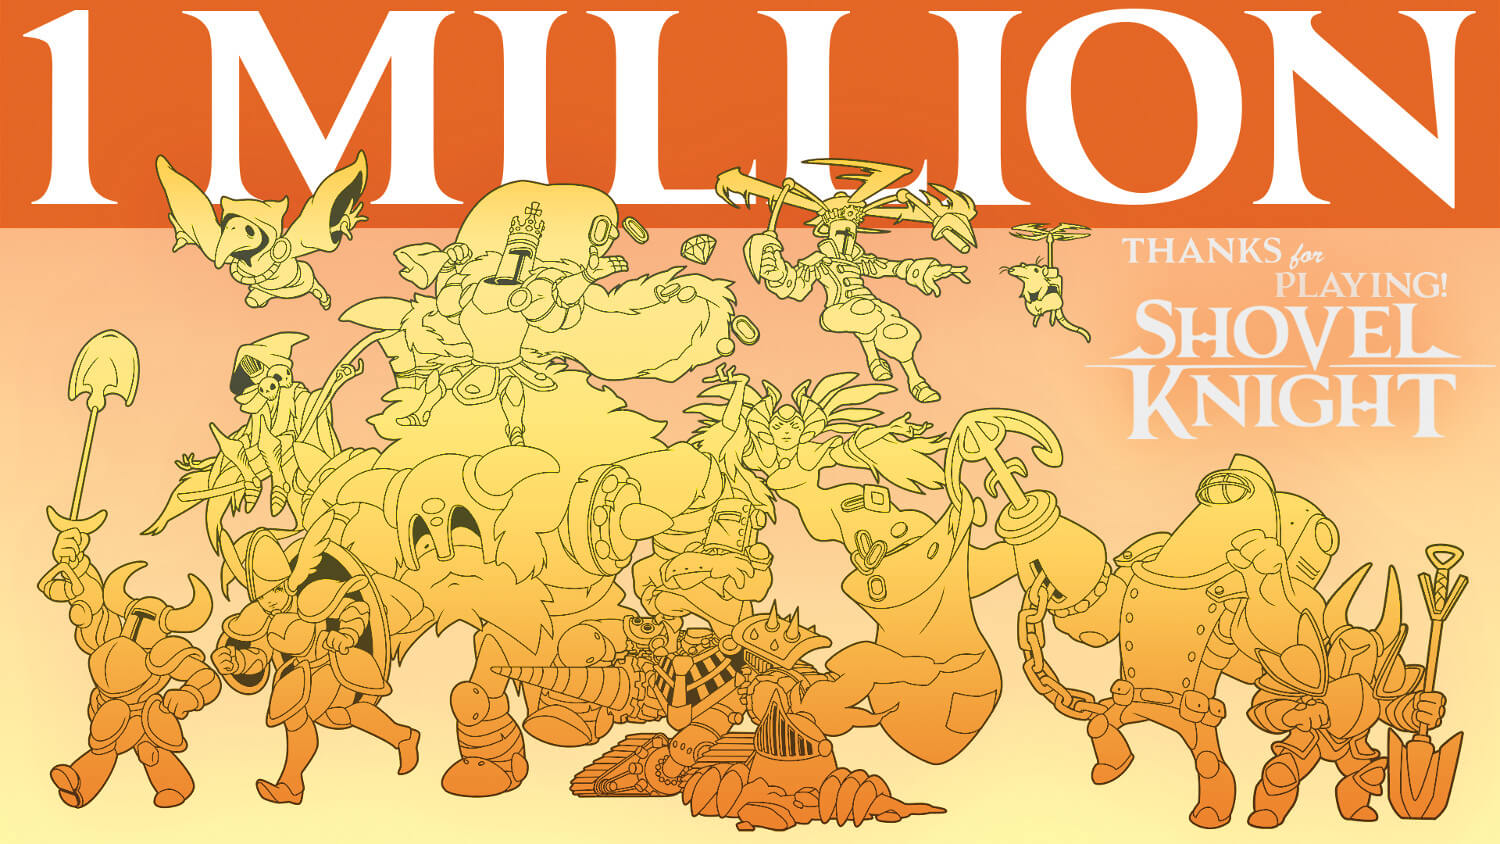 Shovel Knight vendeu 1 milhão de cópias